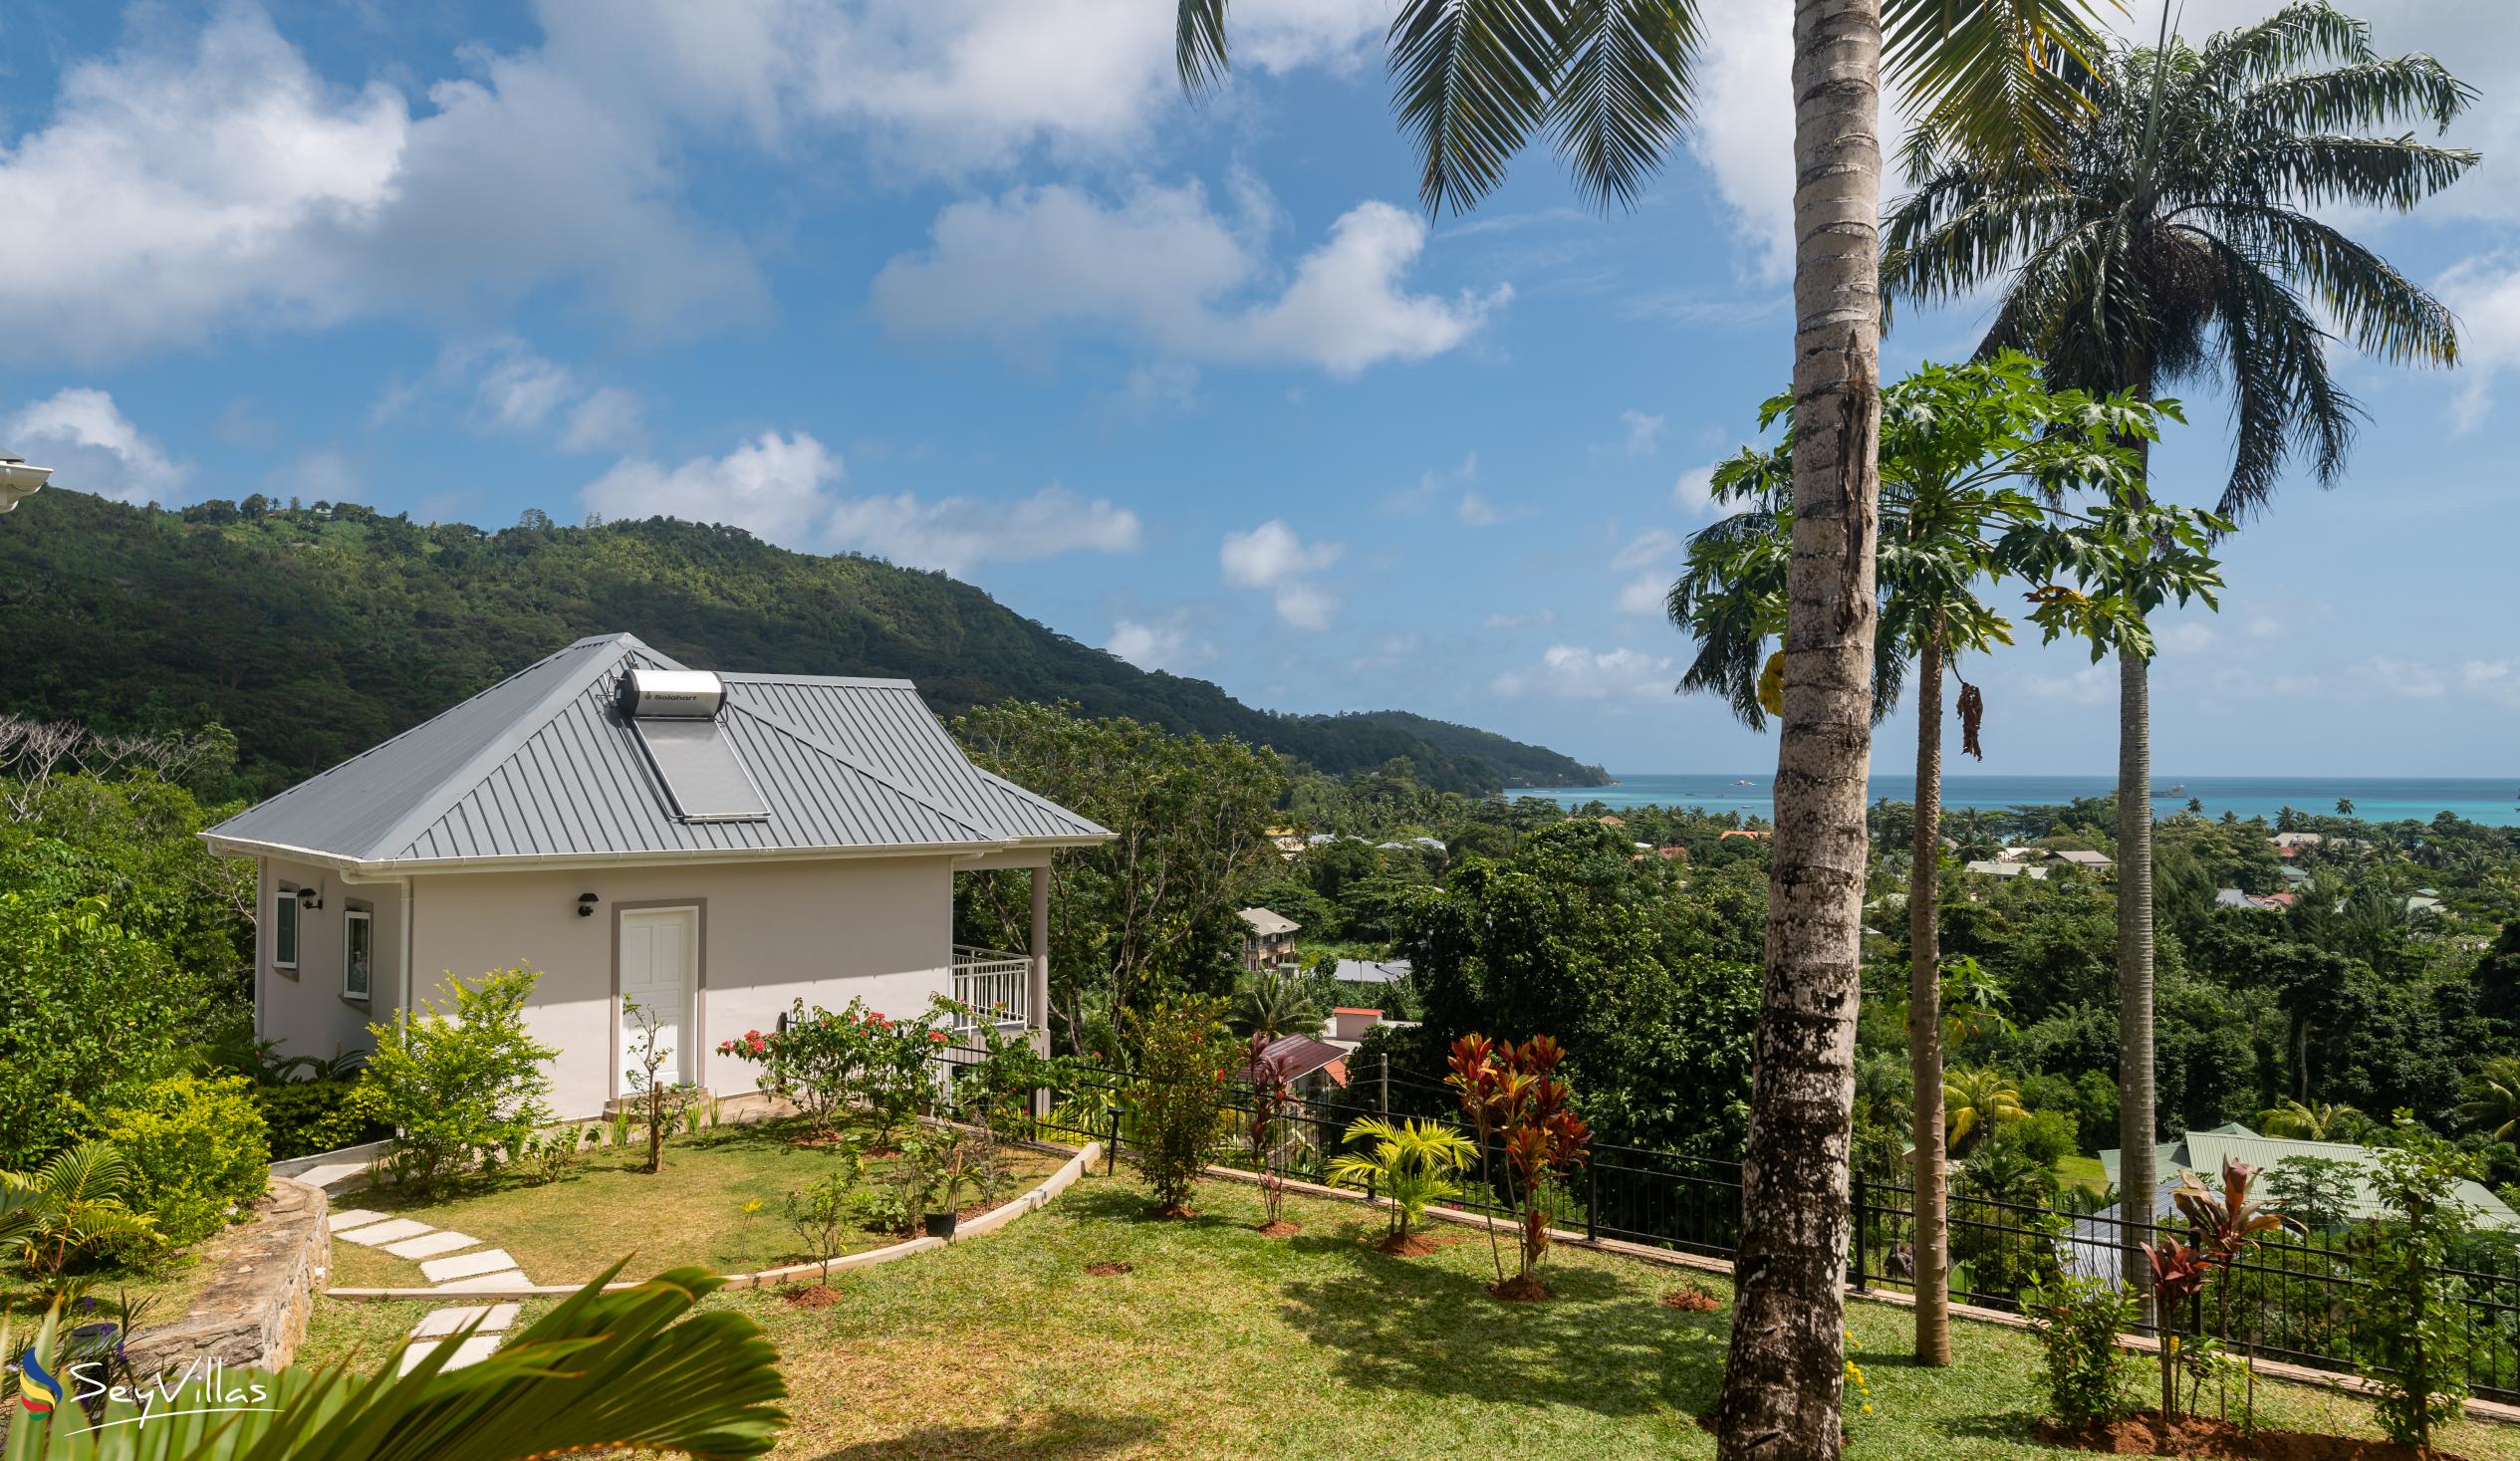 Photo 3: La Trouvaille - Outdoor area - Mahé (Seychelles)